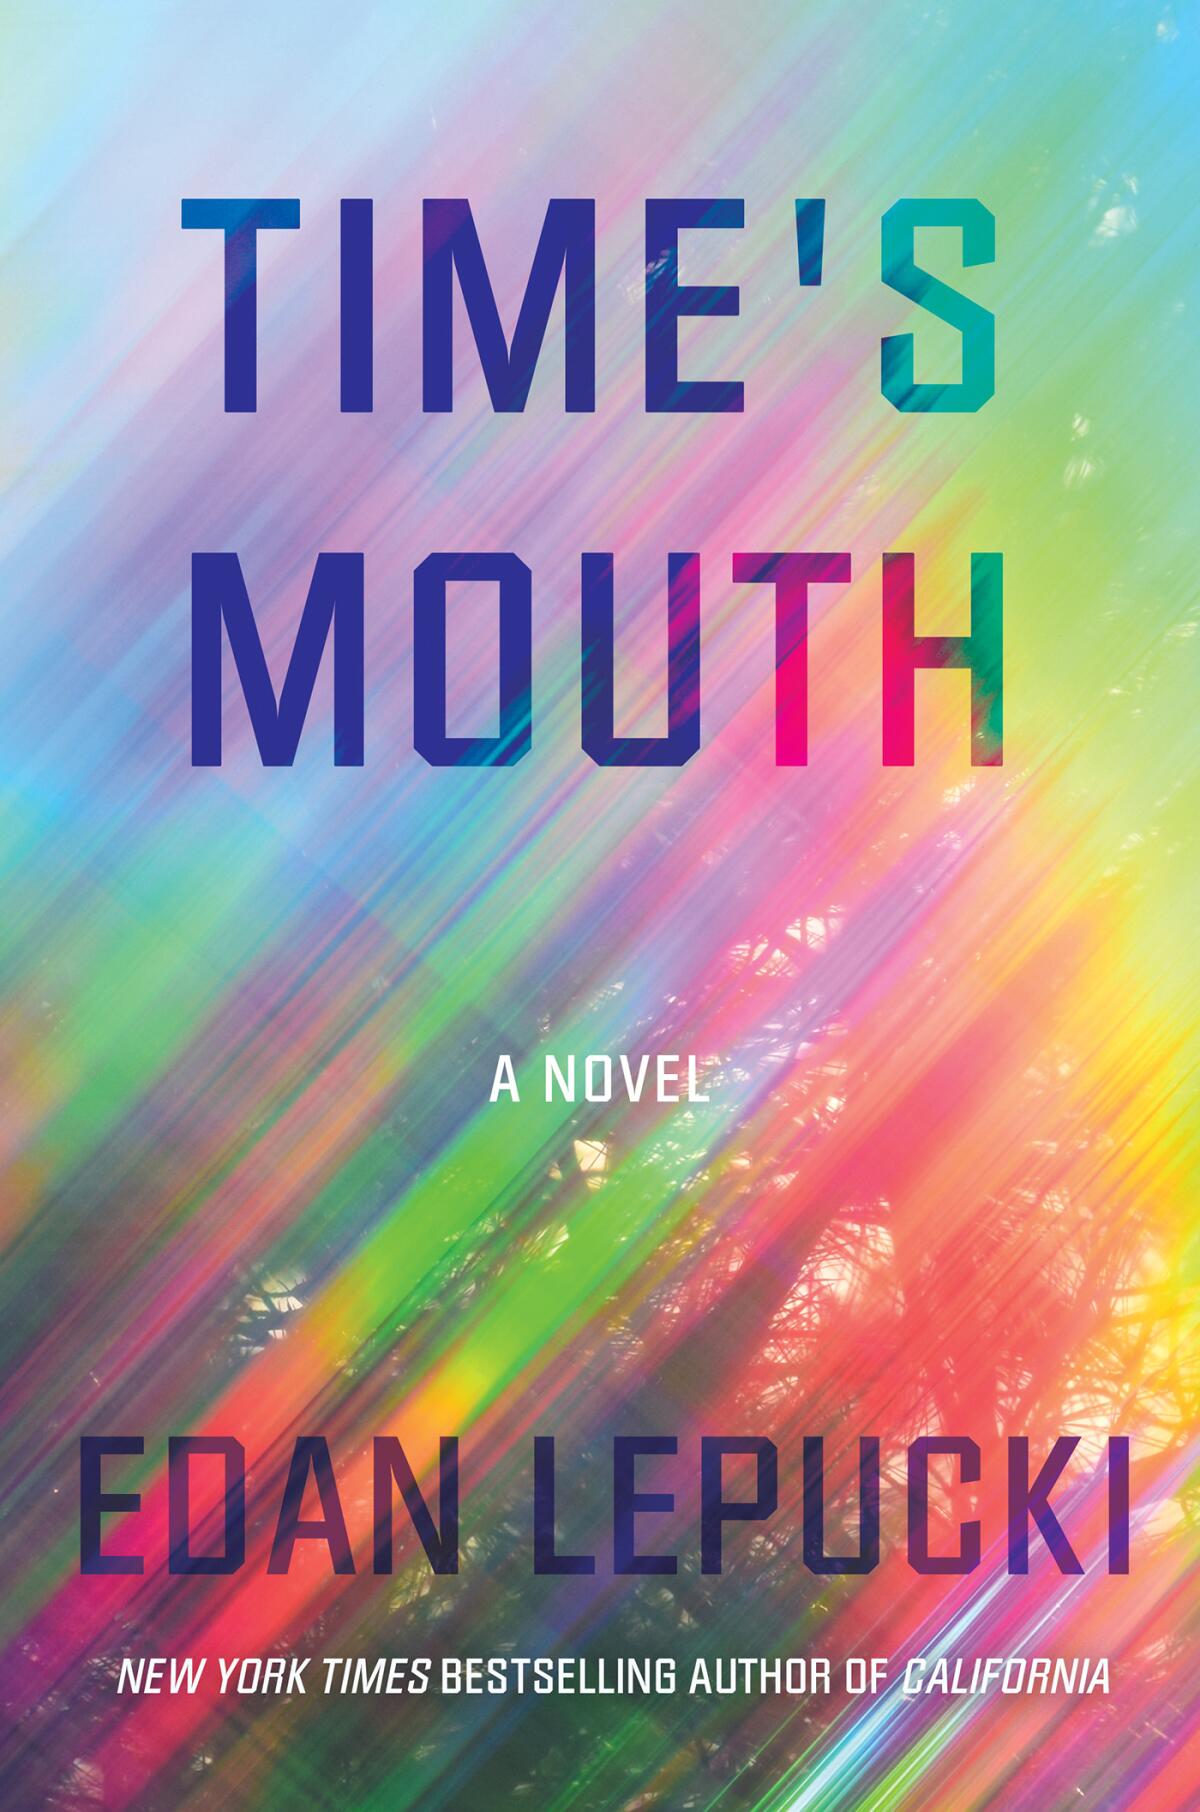 'Time's Mouth,' by Edan Lepucki